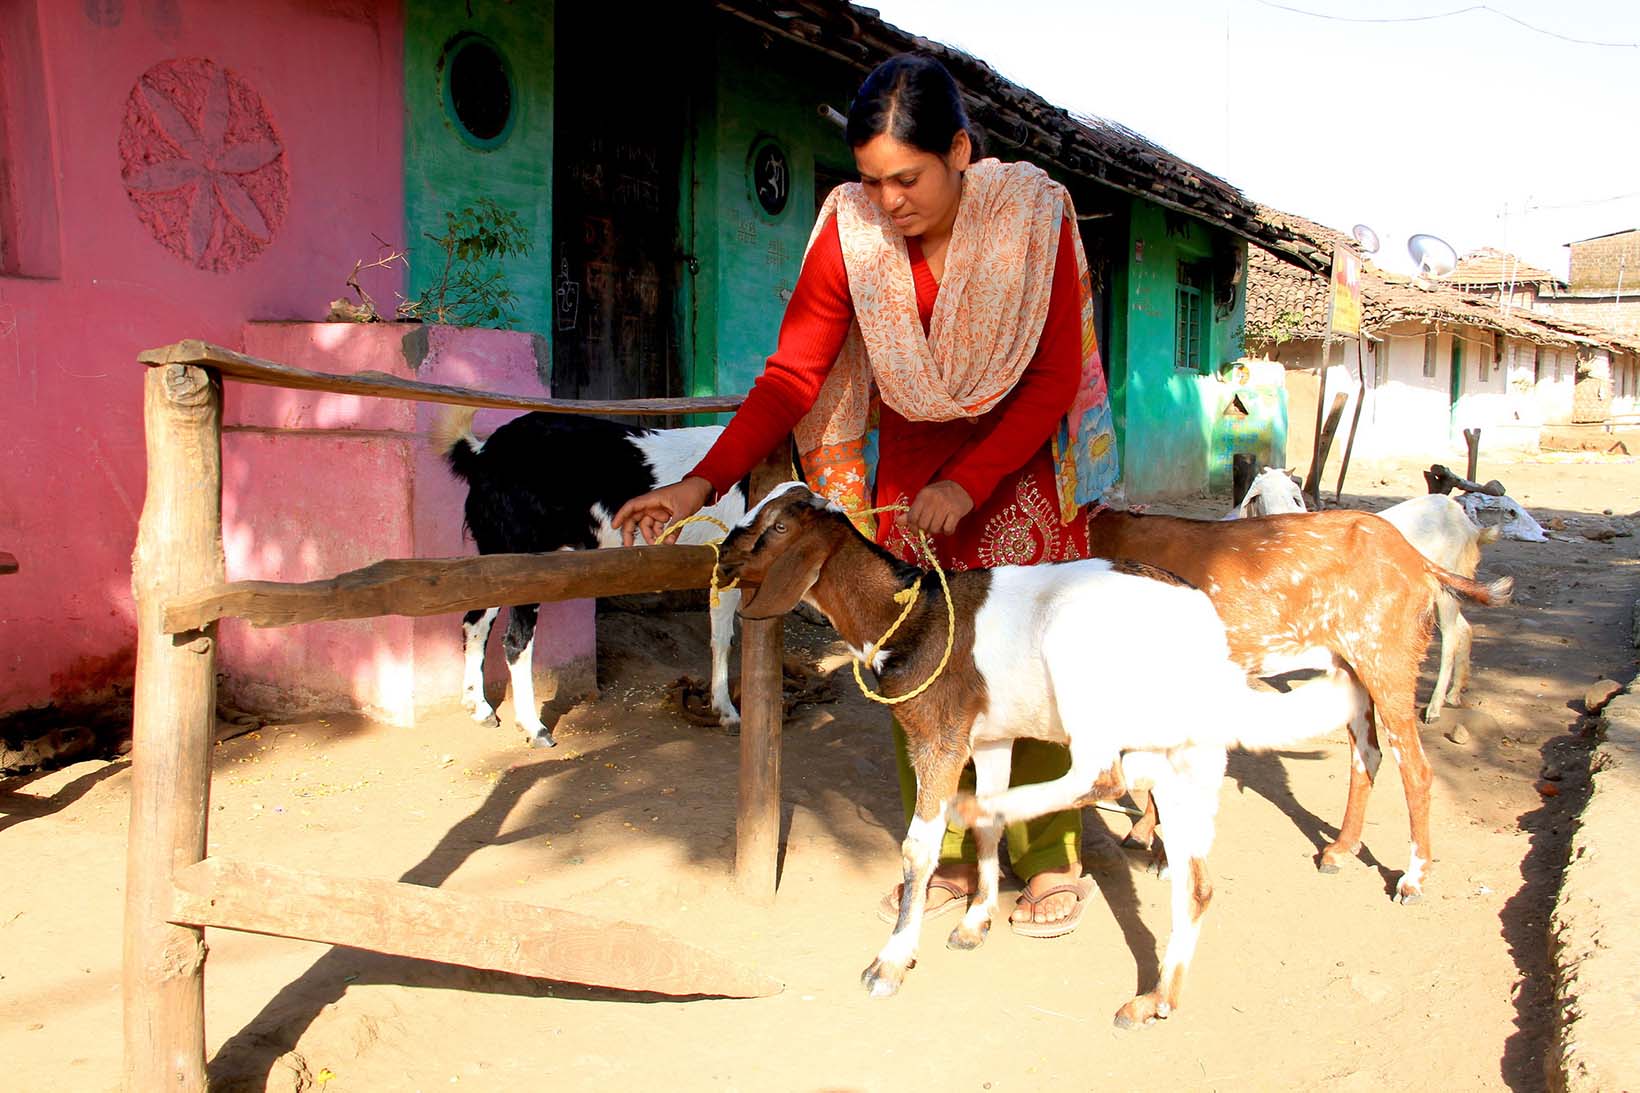  Una signora dell'India lega una capra ad un palo di legno. Nell sfondo si vedono altre capre.